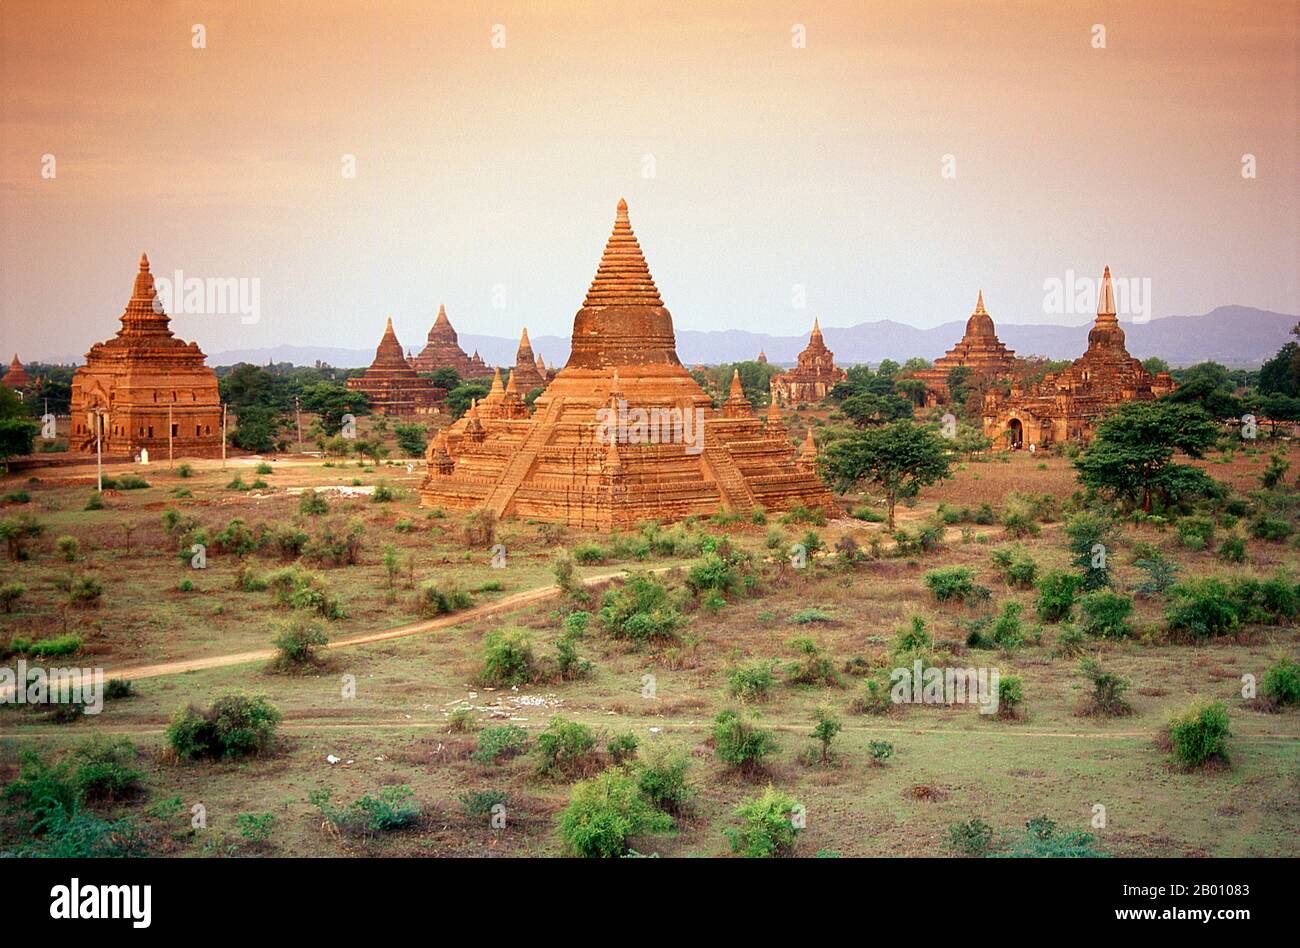 Birmania: Templi sparsi attraverso la pianura, Bagan (Pagan) Antica Città. Bagan, ex Pagan, è stato costruito principalmente tra il 11 ° secolo e 13 ° secolo. Formalmente chiamato Arimaddanapura o Arimaddana (la città del Crusher Enemy) e conosciuto anche come Tambadipa (la terra del rame) o Tassadessa (la terra dei cortei), era la capitale di diversi regni antichi in Birmania. Foto Stock